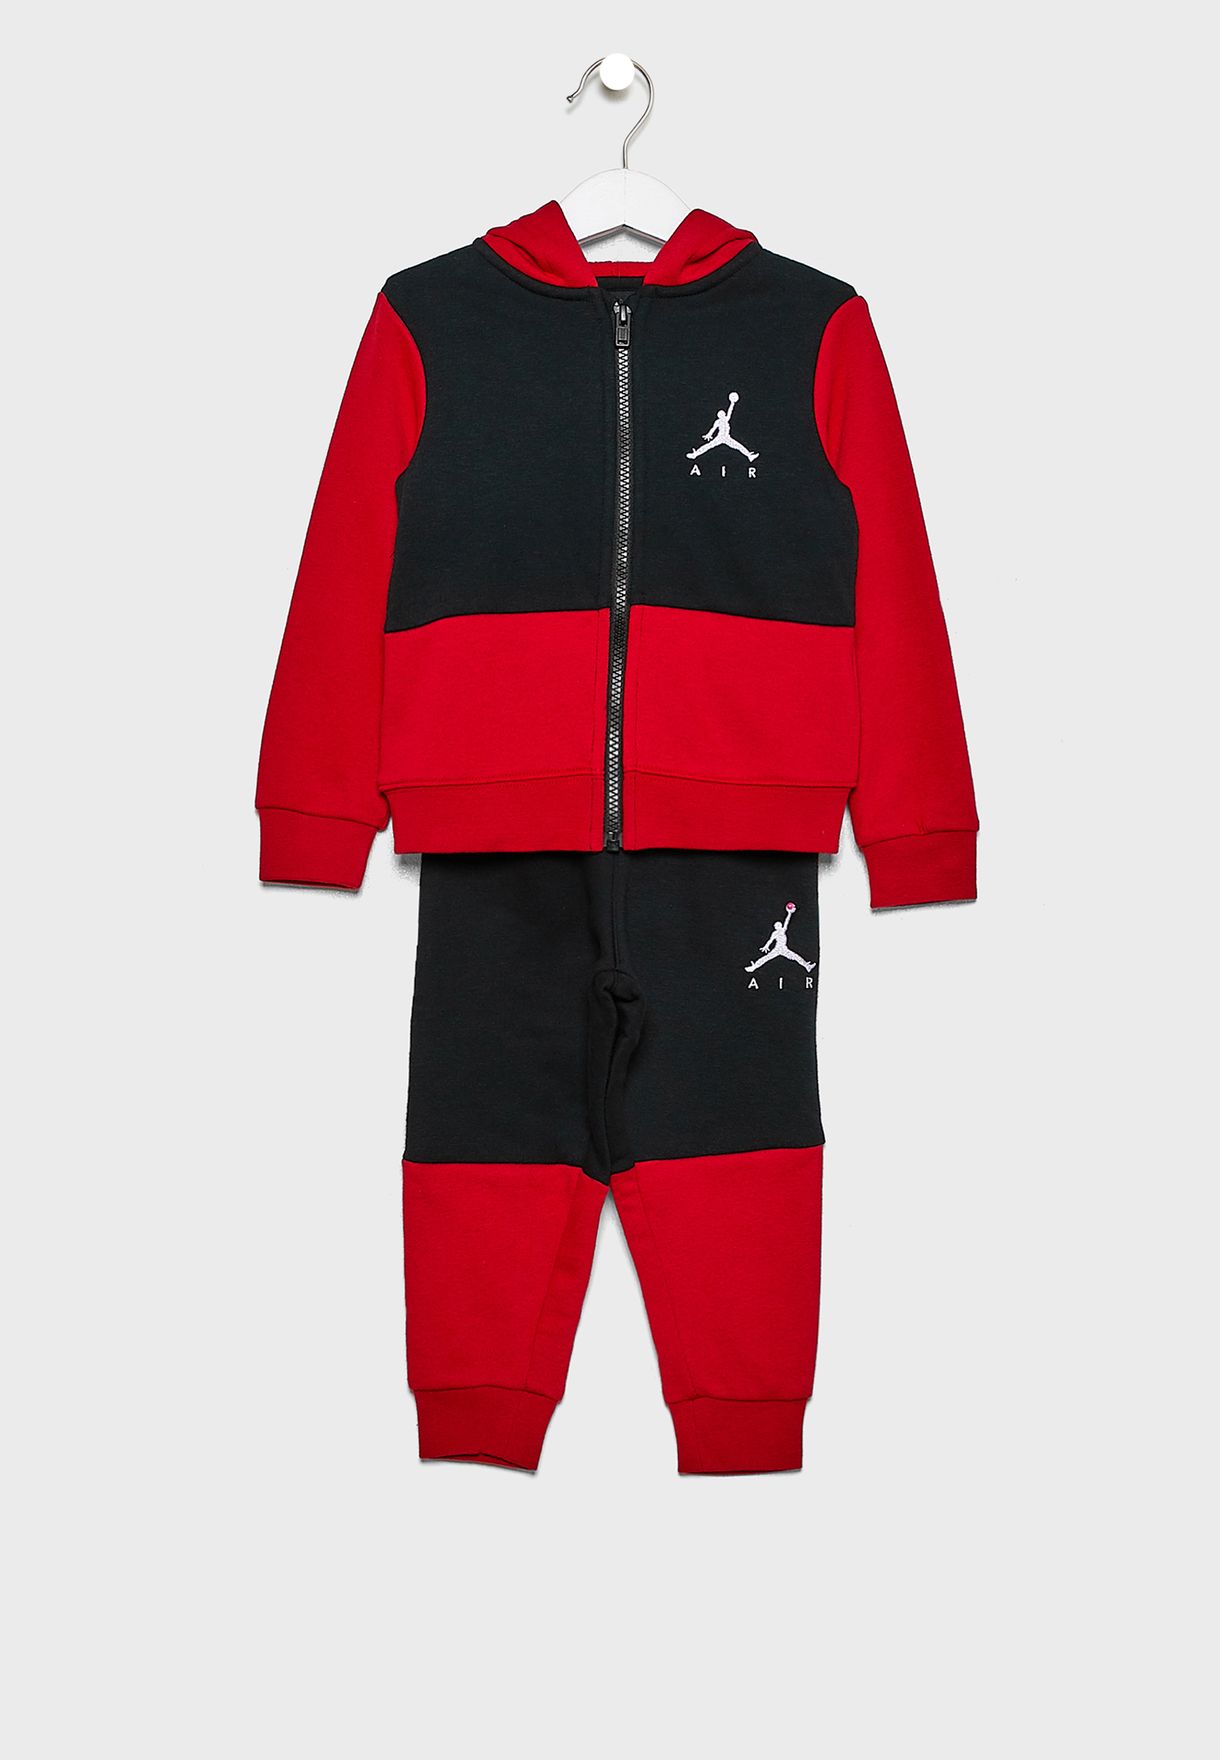 Buy Nike multicolor Infant Air Jordan 